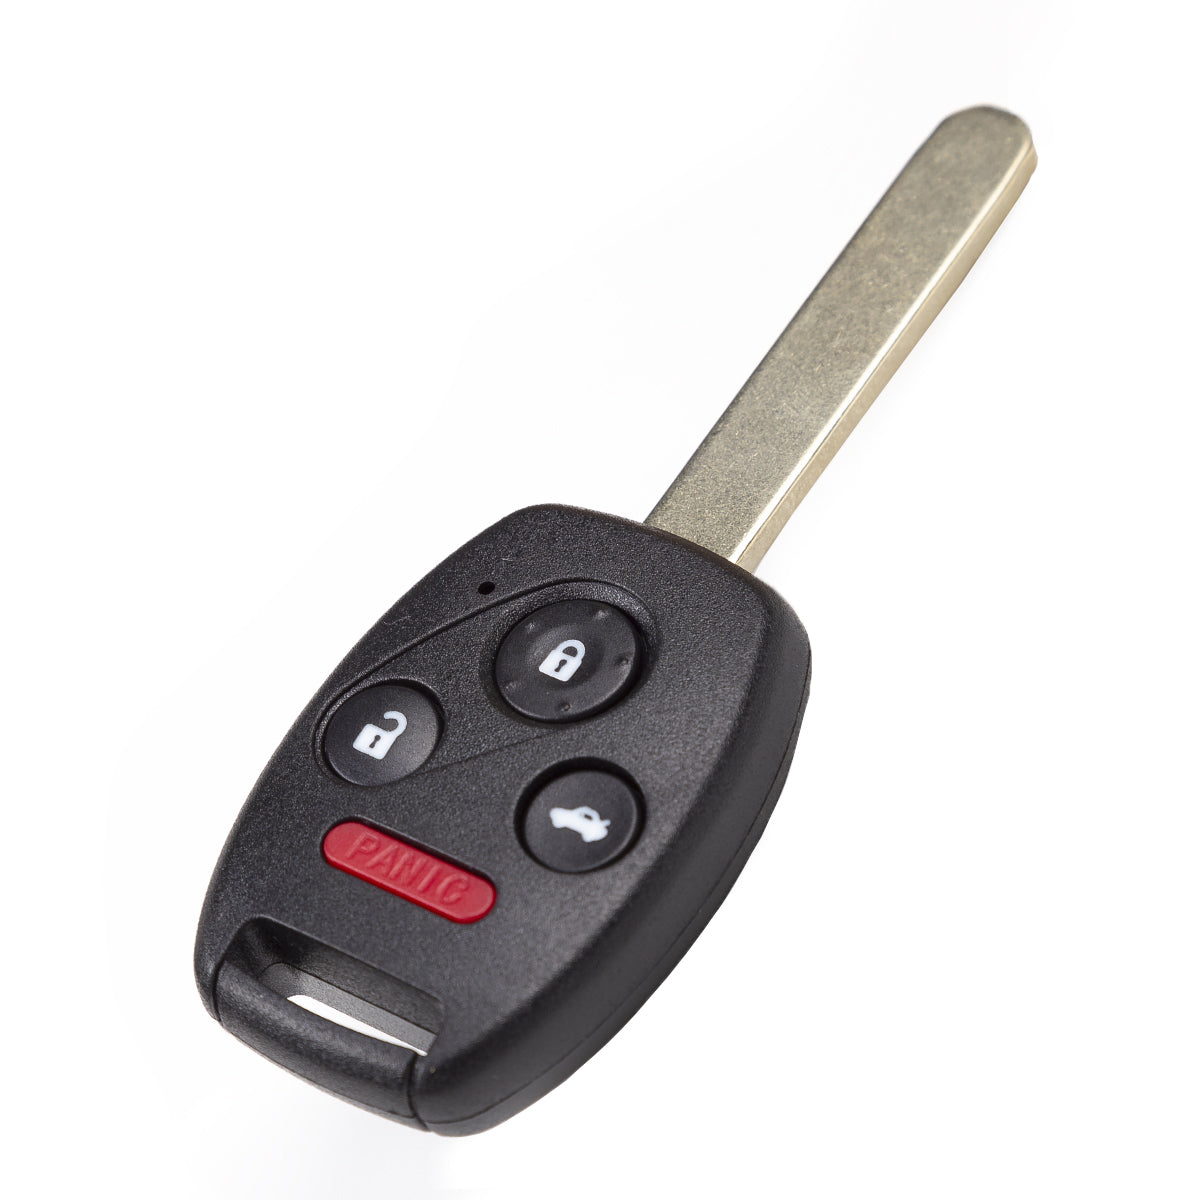 2006 Honda Accord Key Fob 4 Buttons FCC# 0UCG8D-380H-A